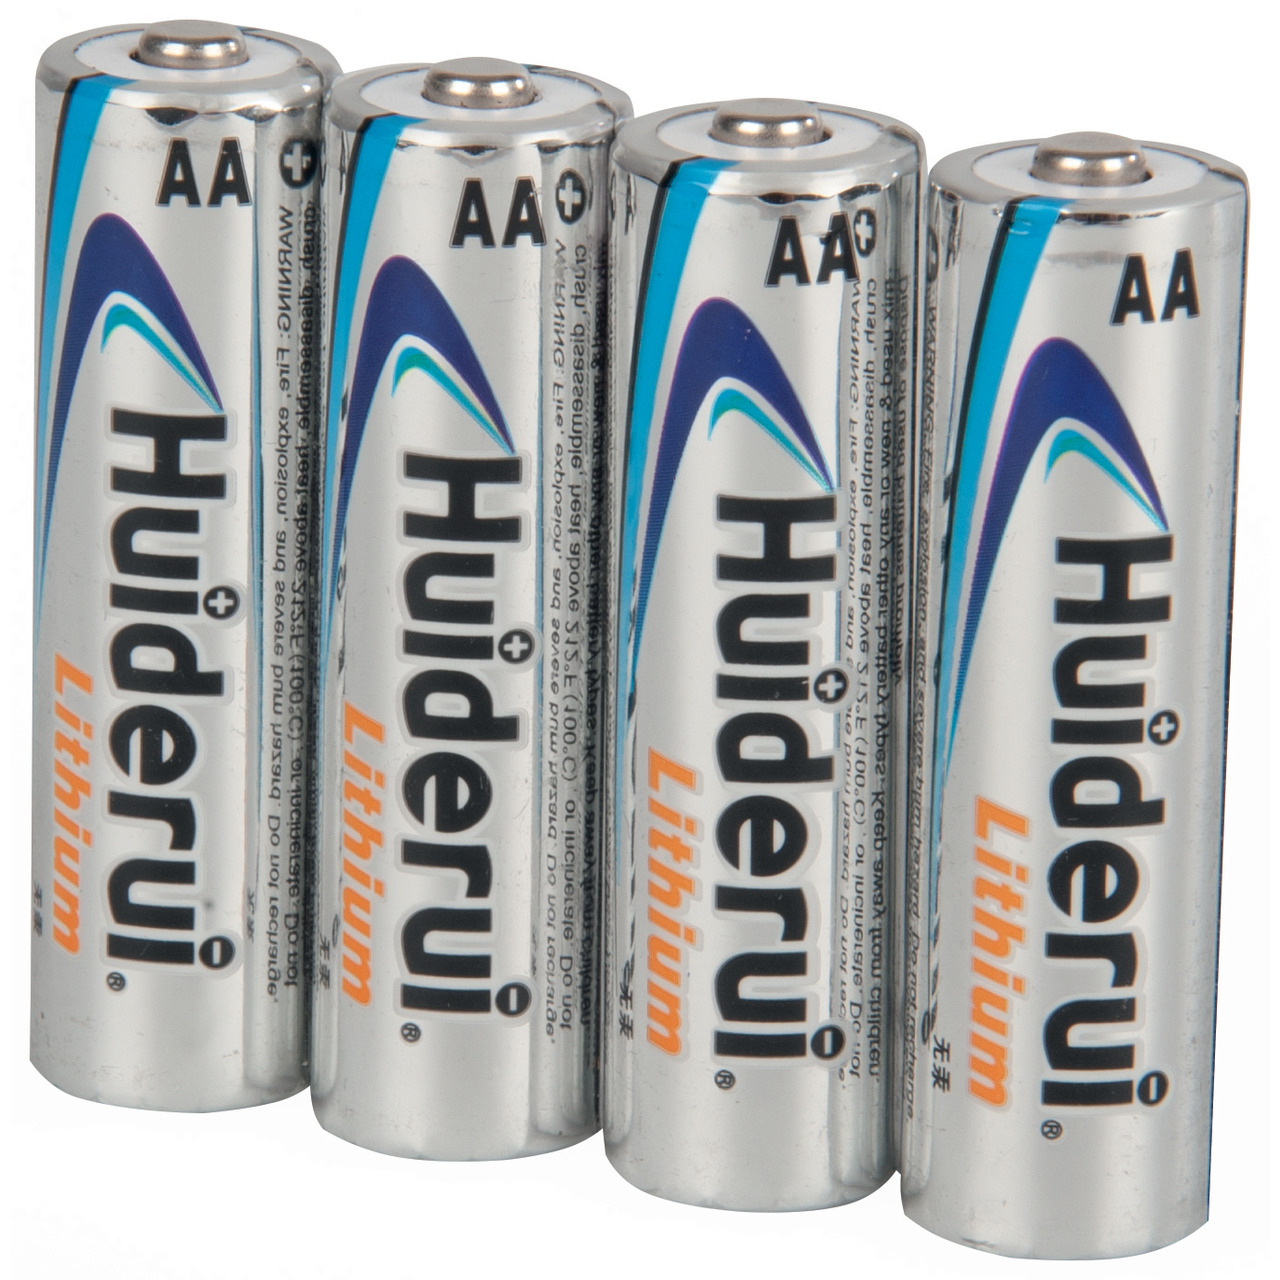 Huiderui Lithium Batterie Mignon AA- 4er-Pack